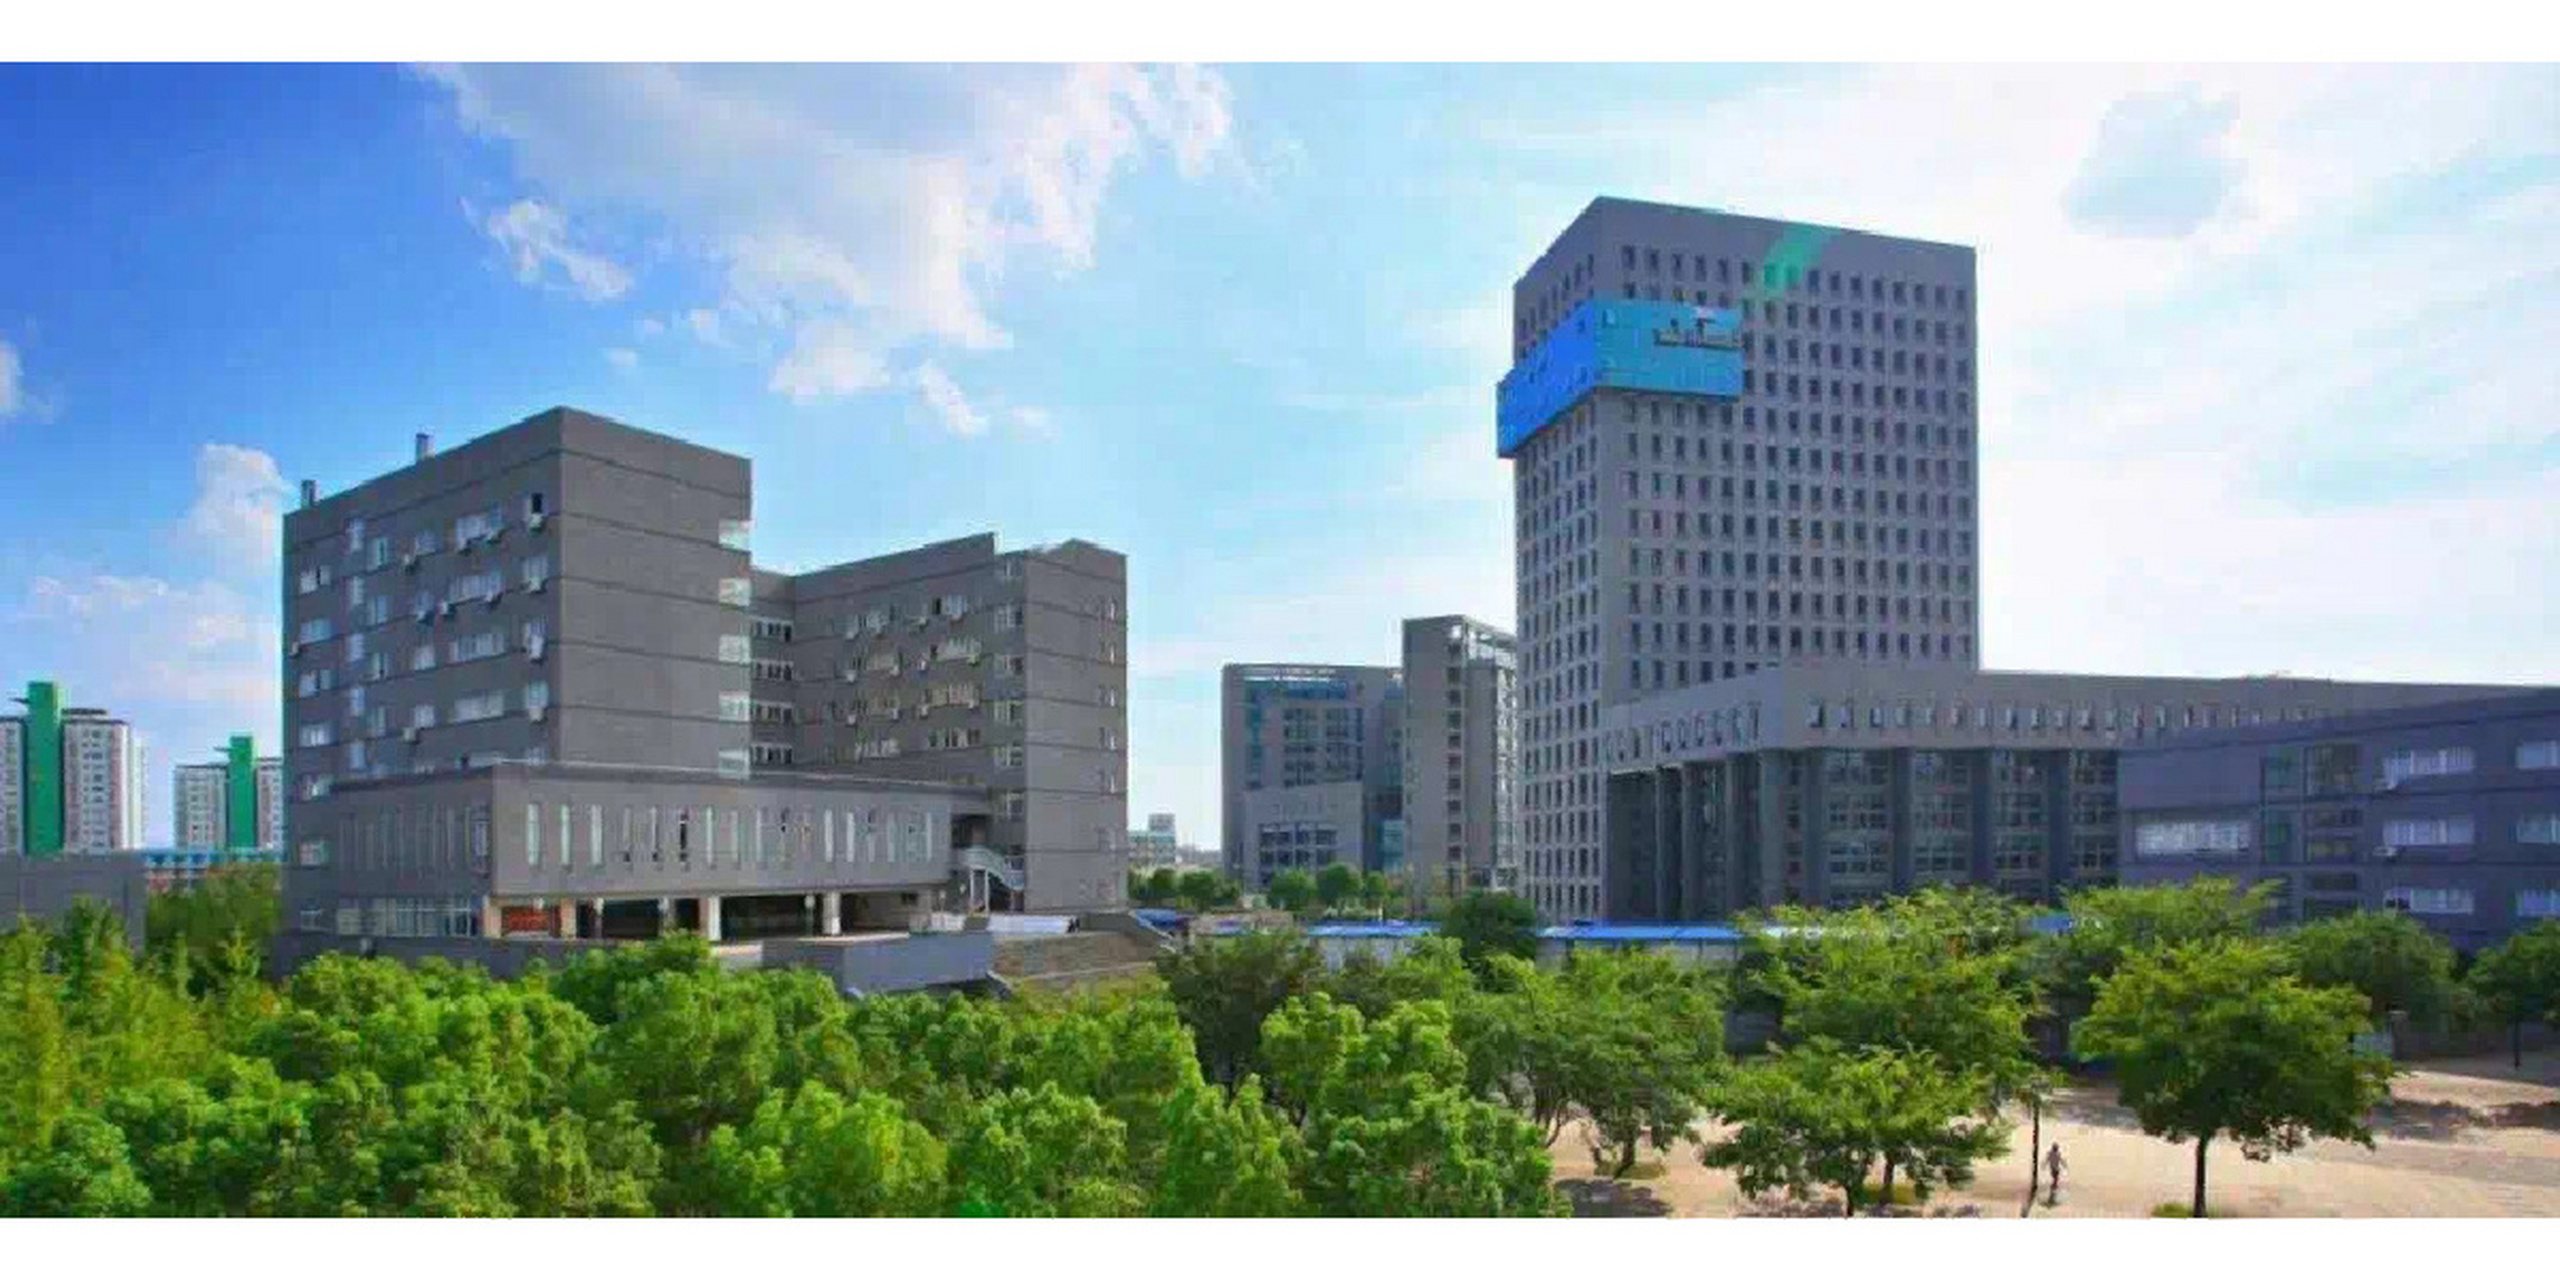 宁波城巿职业技术学院图片